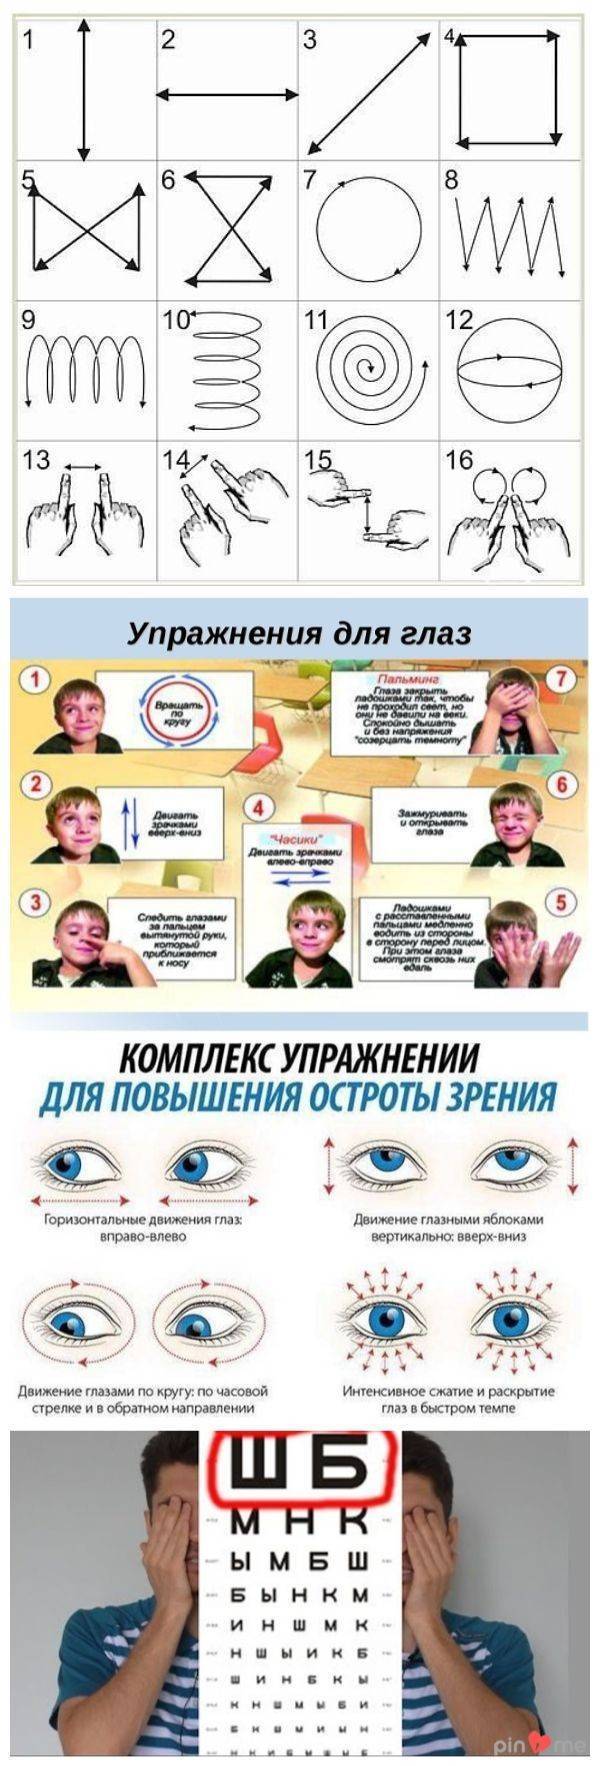 Упражнения для глаз при косоглазии - энциклопедия ochkov.net